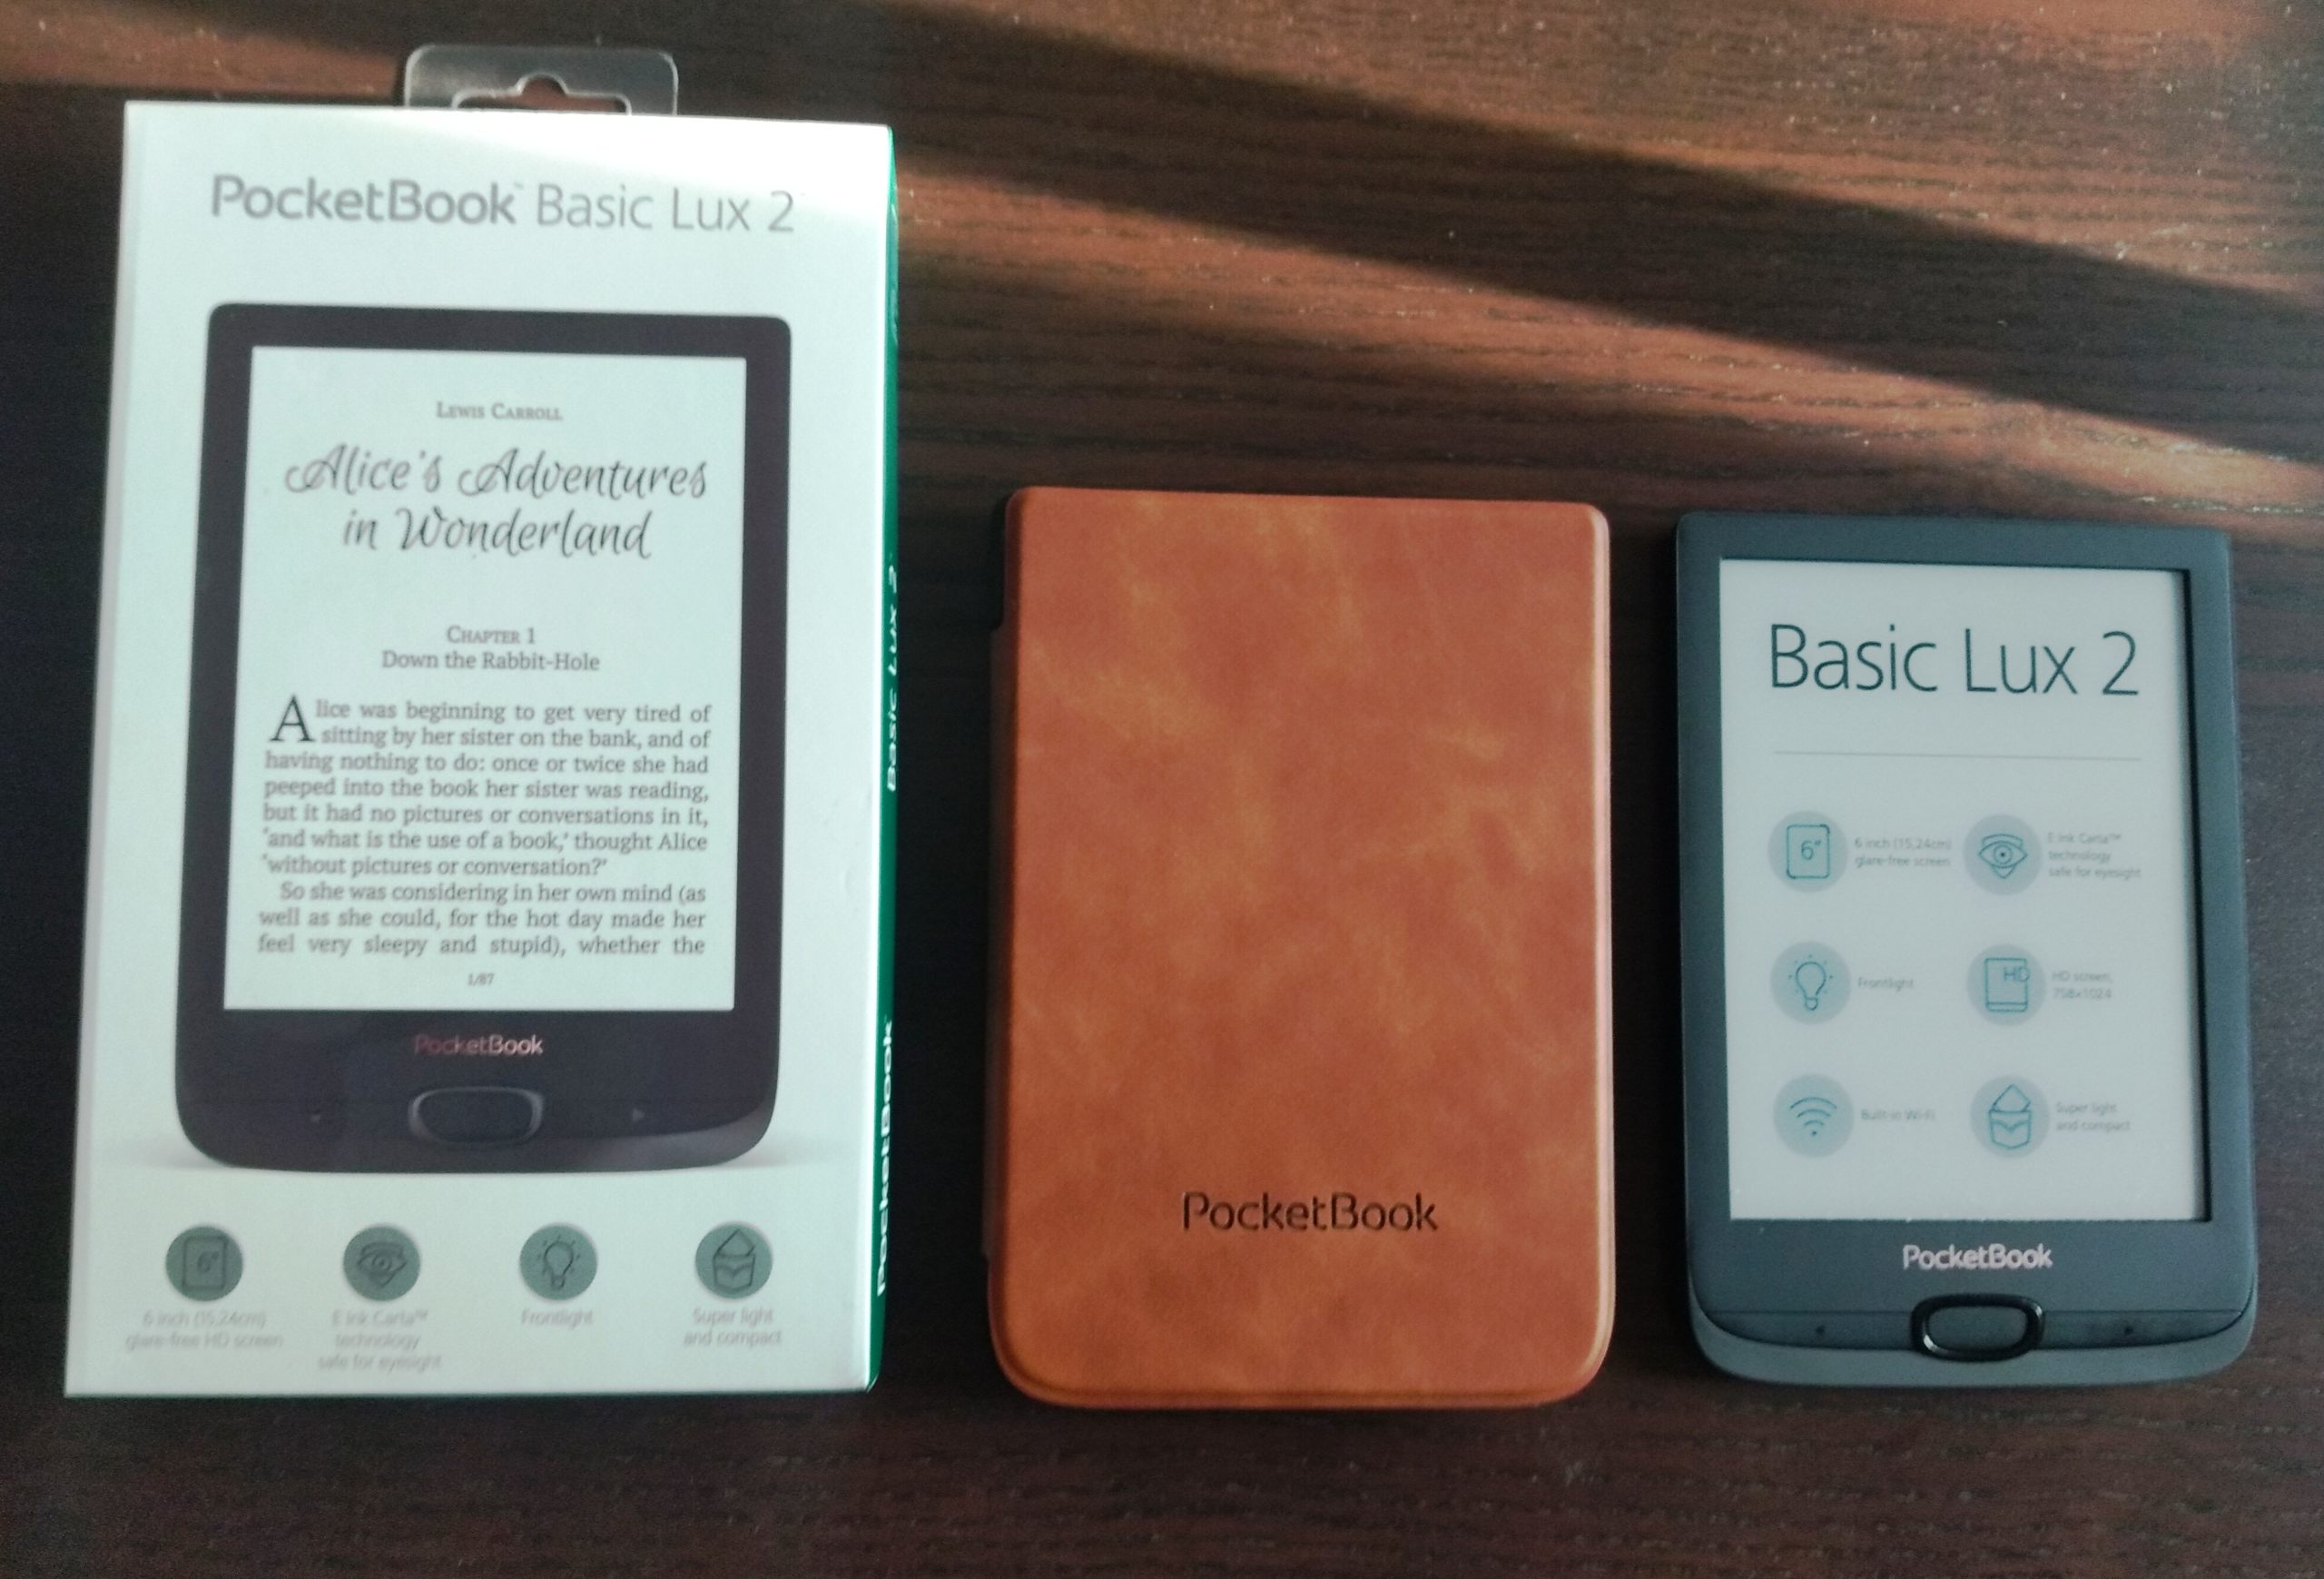 PocketBook scaled